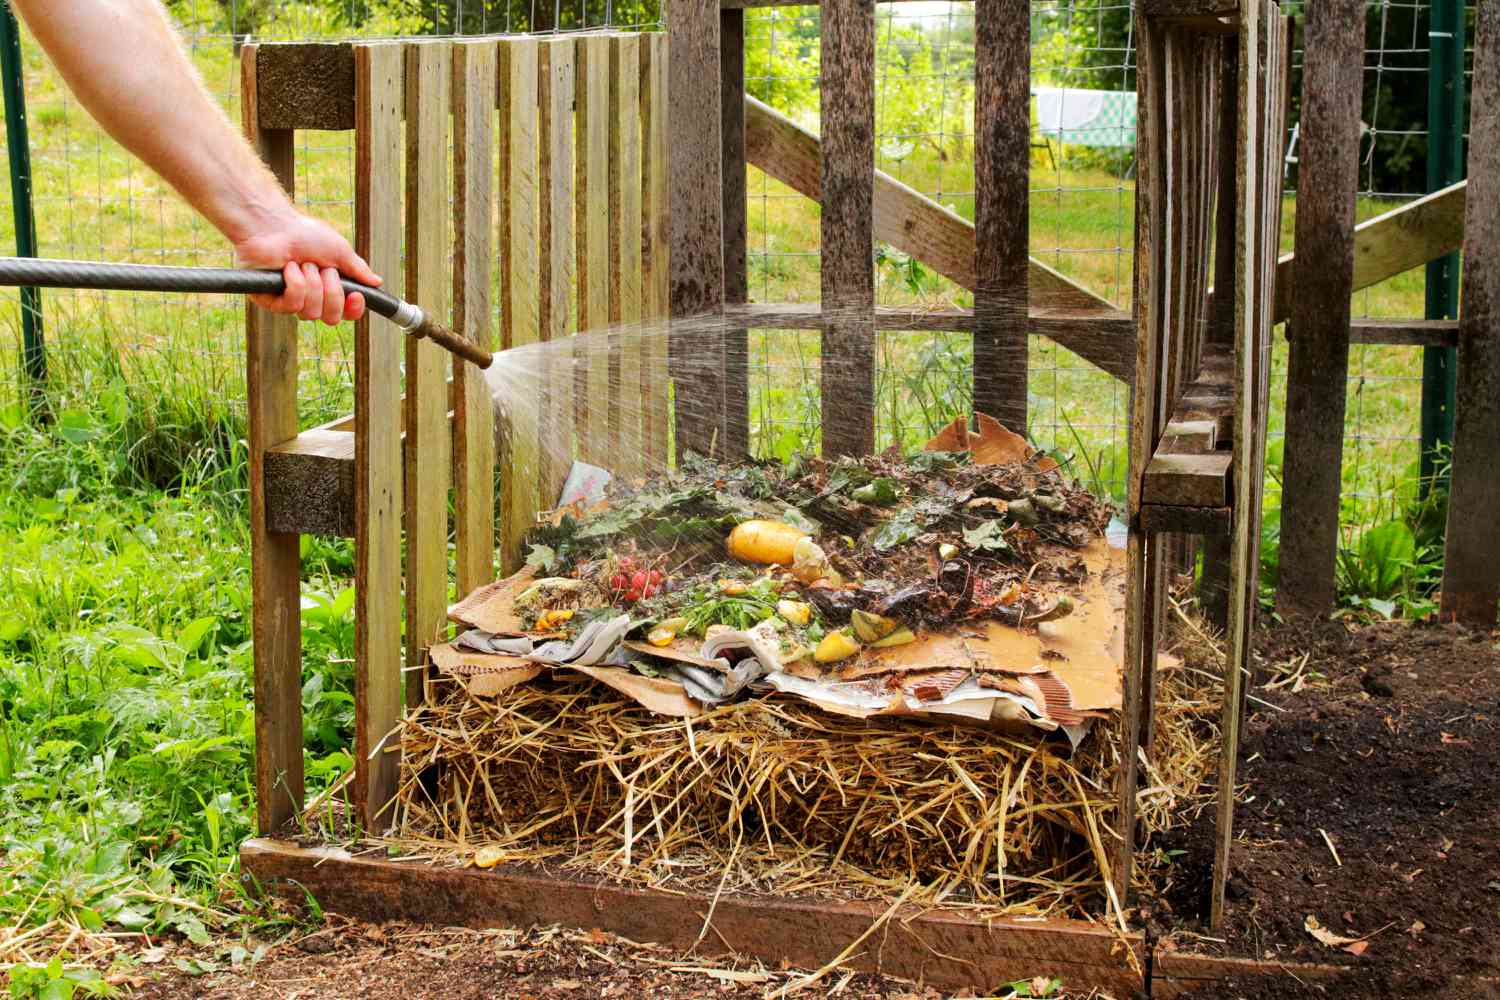 Geschichtetes, mit dem Gartenschlauch bewässertes Kompostmaterial in einem Holzbehälter